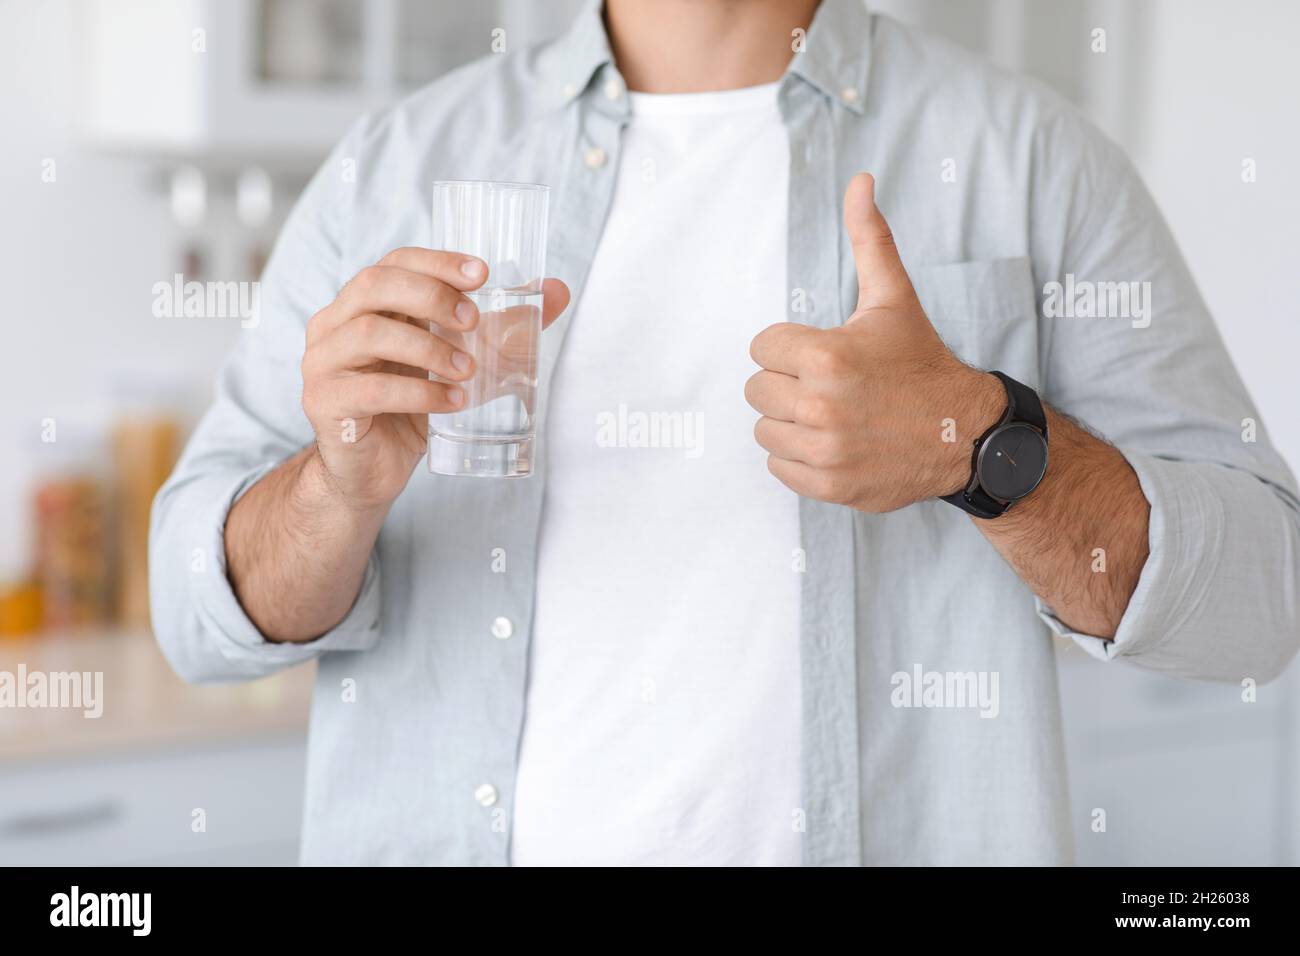 Unkenntlich erwachsener kaukasischer Mann mit einem Glas Wasser, das auf der minimalistischen Kücheneinrichtung ein Daumenschild zeigt Stockfoto